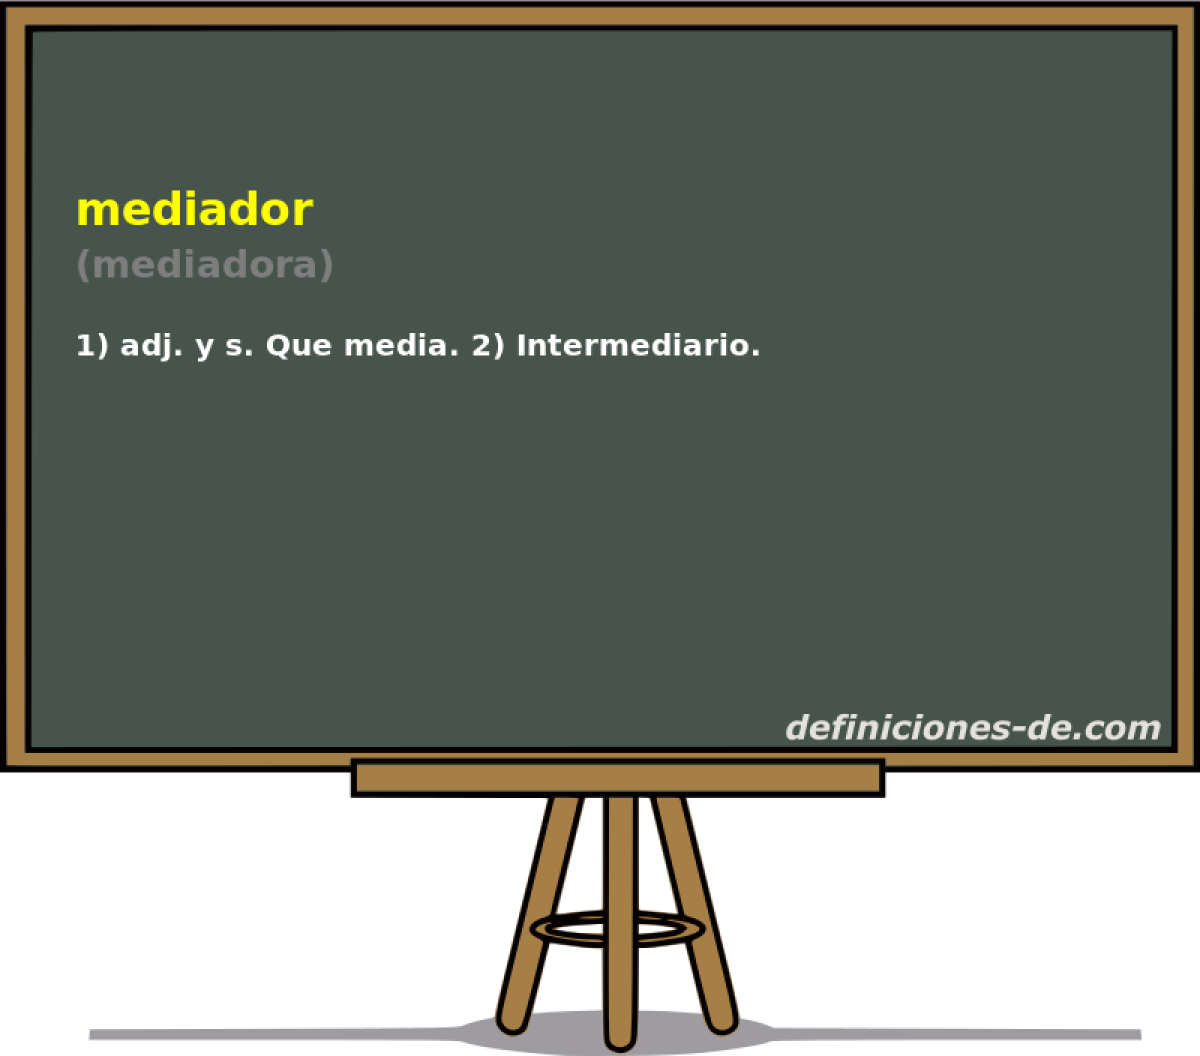 mediador (mediadora)